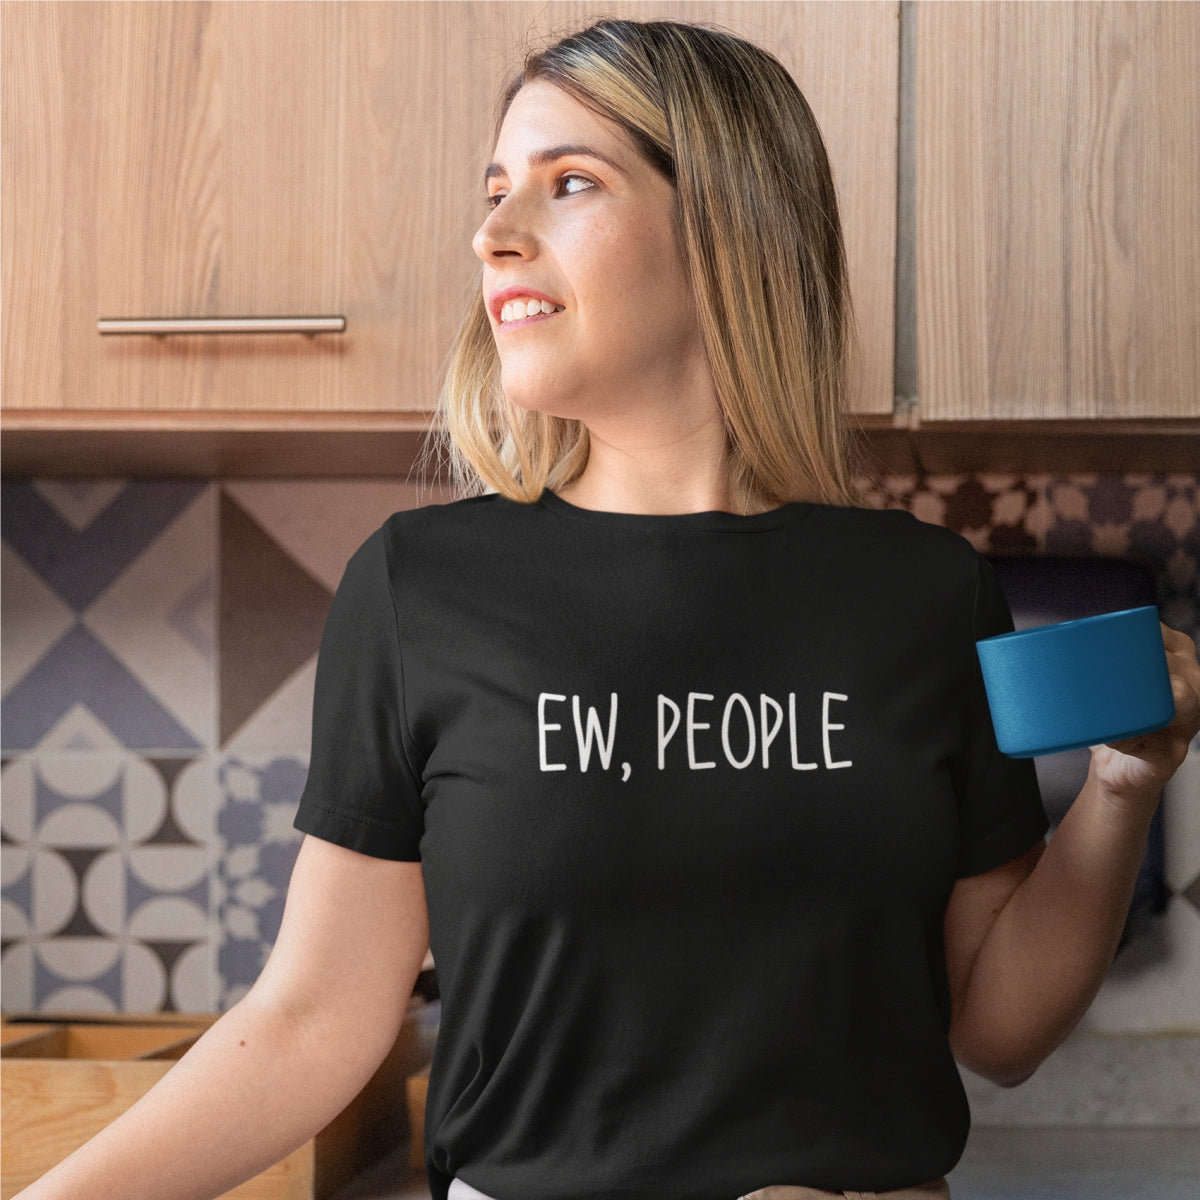 Juodi UNISEX marškinėliai "Ew, people"